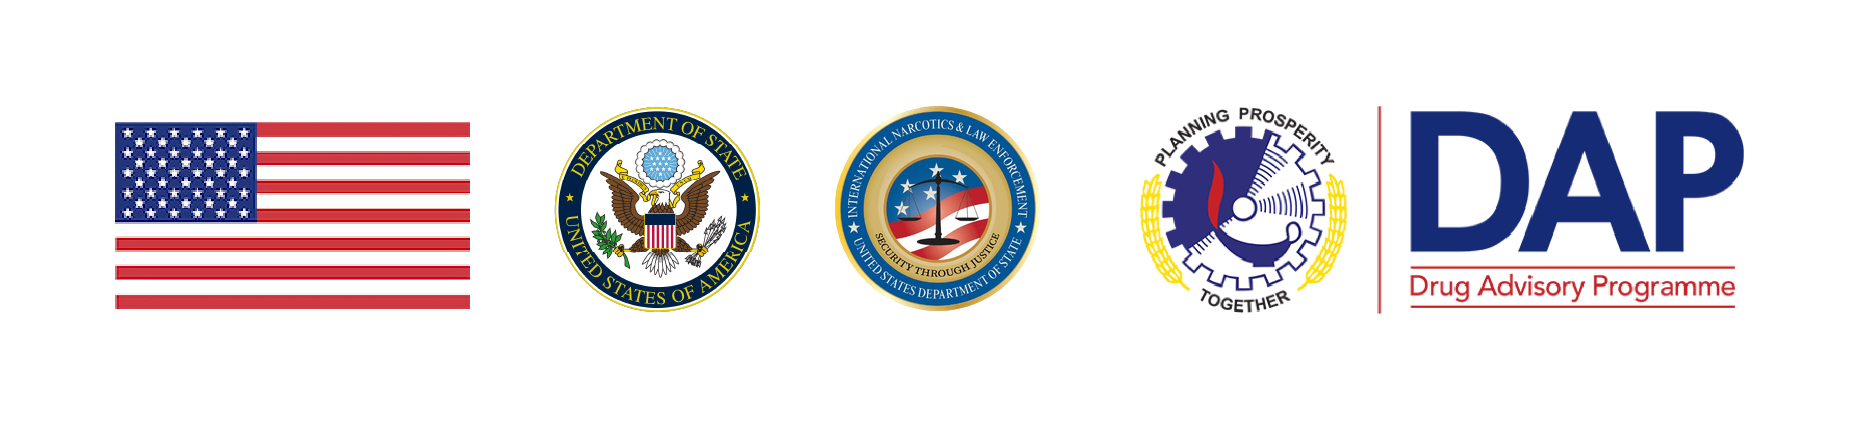 Логотипы Государственного департамент США и Консультативной программы по наркотикам Плана Коломбо 